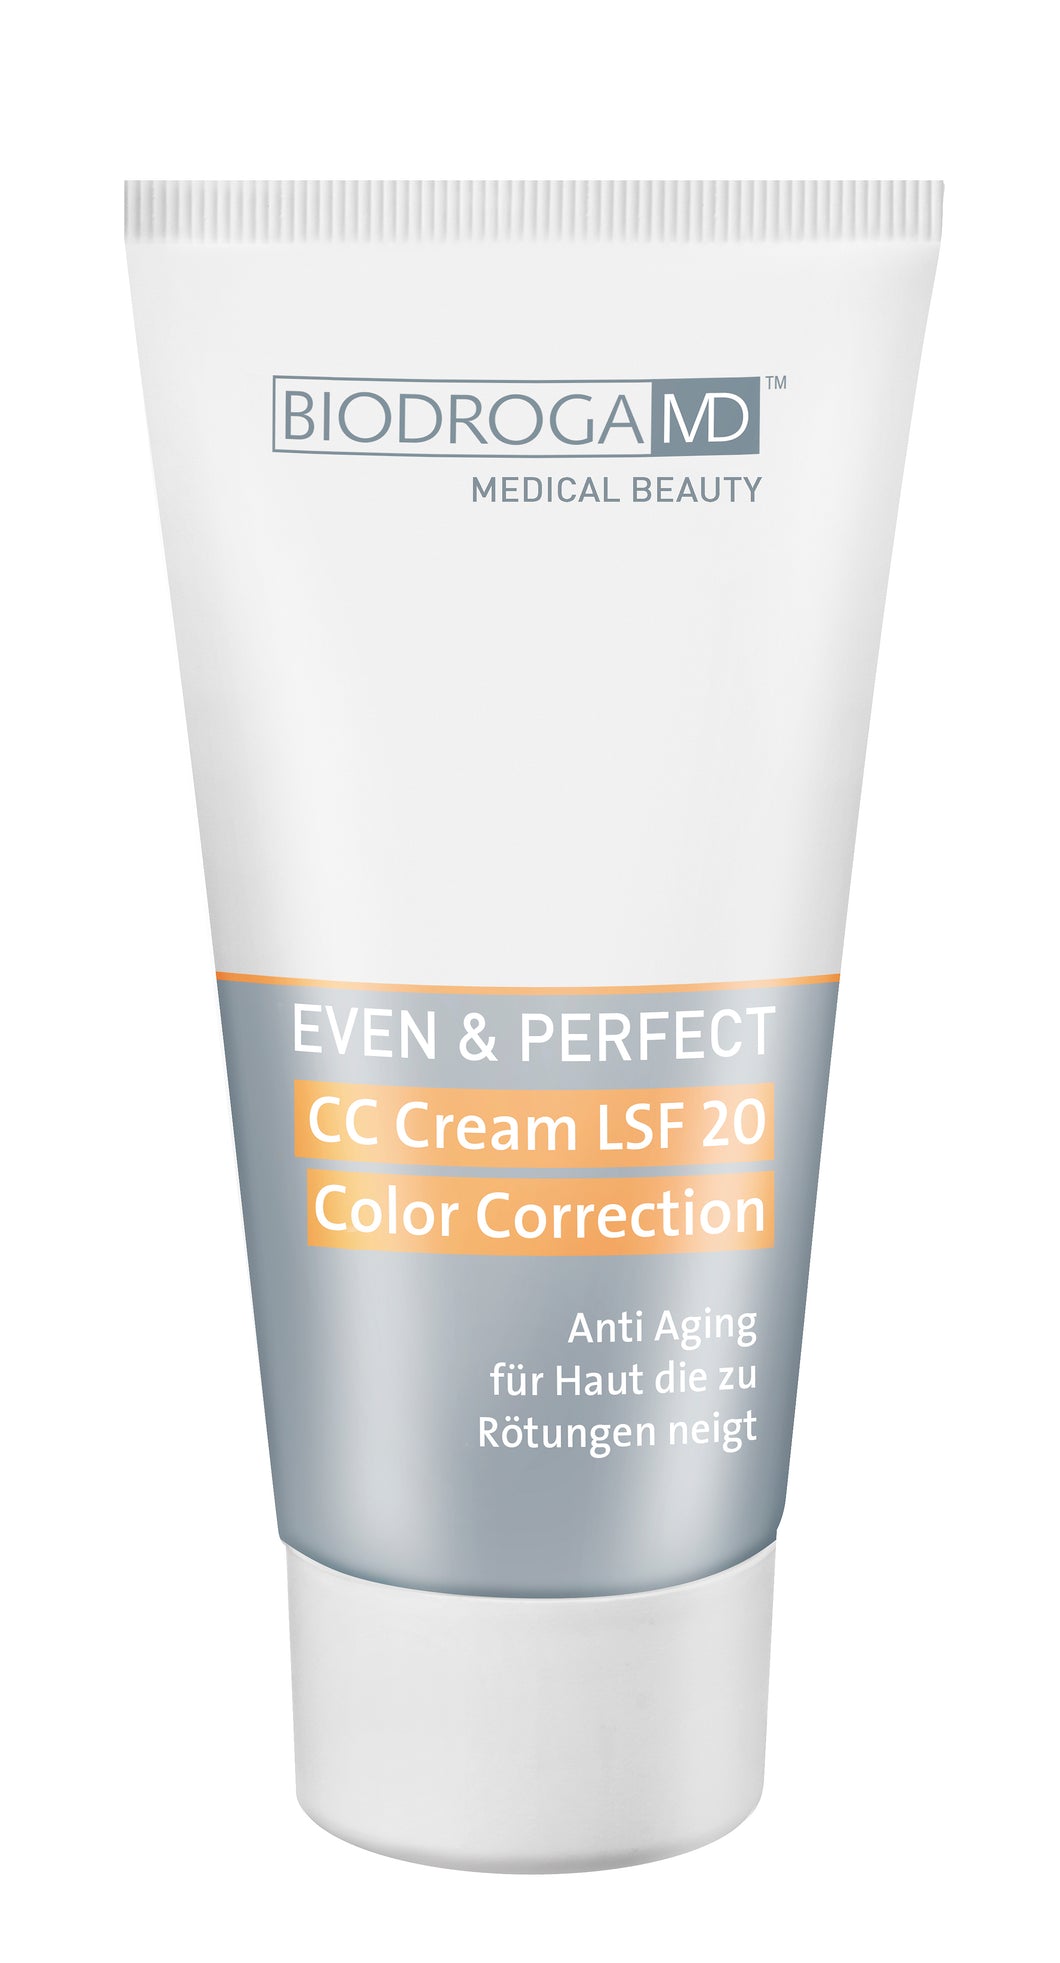 CC Cream LSF 20 Color Correction - Rötungen